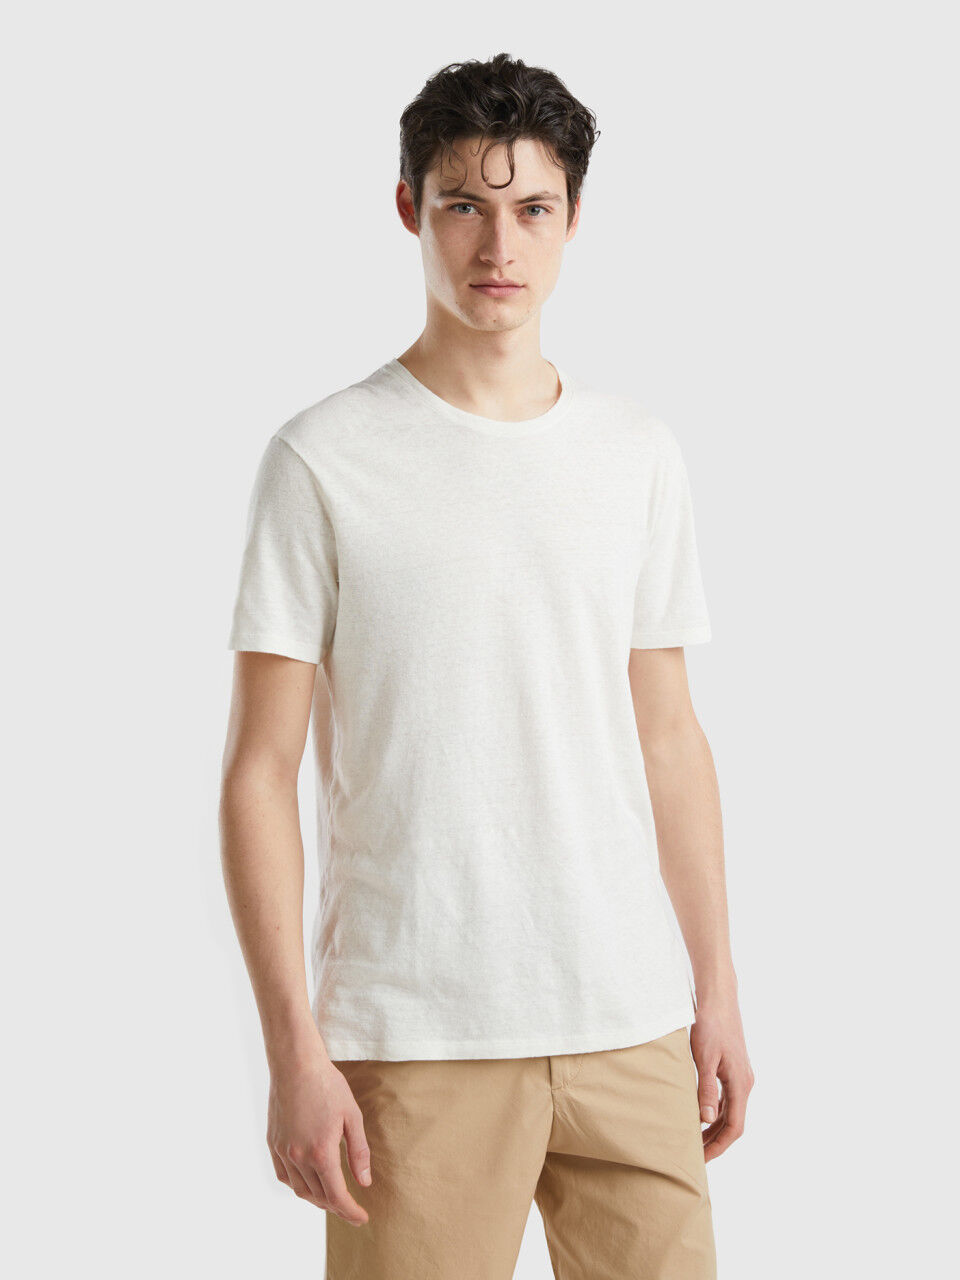 T-shirt in linen blend